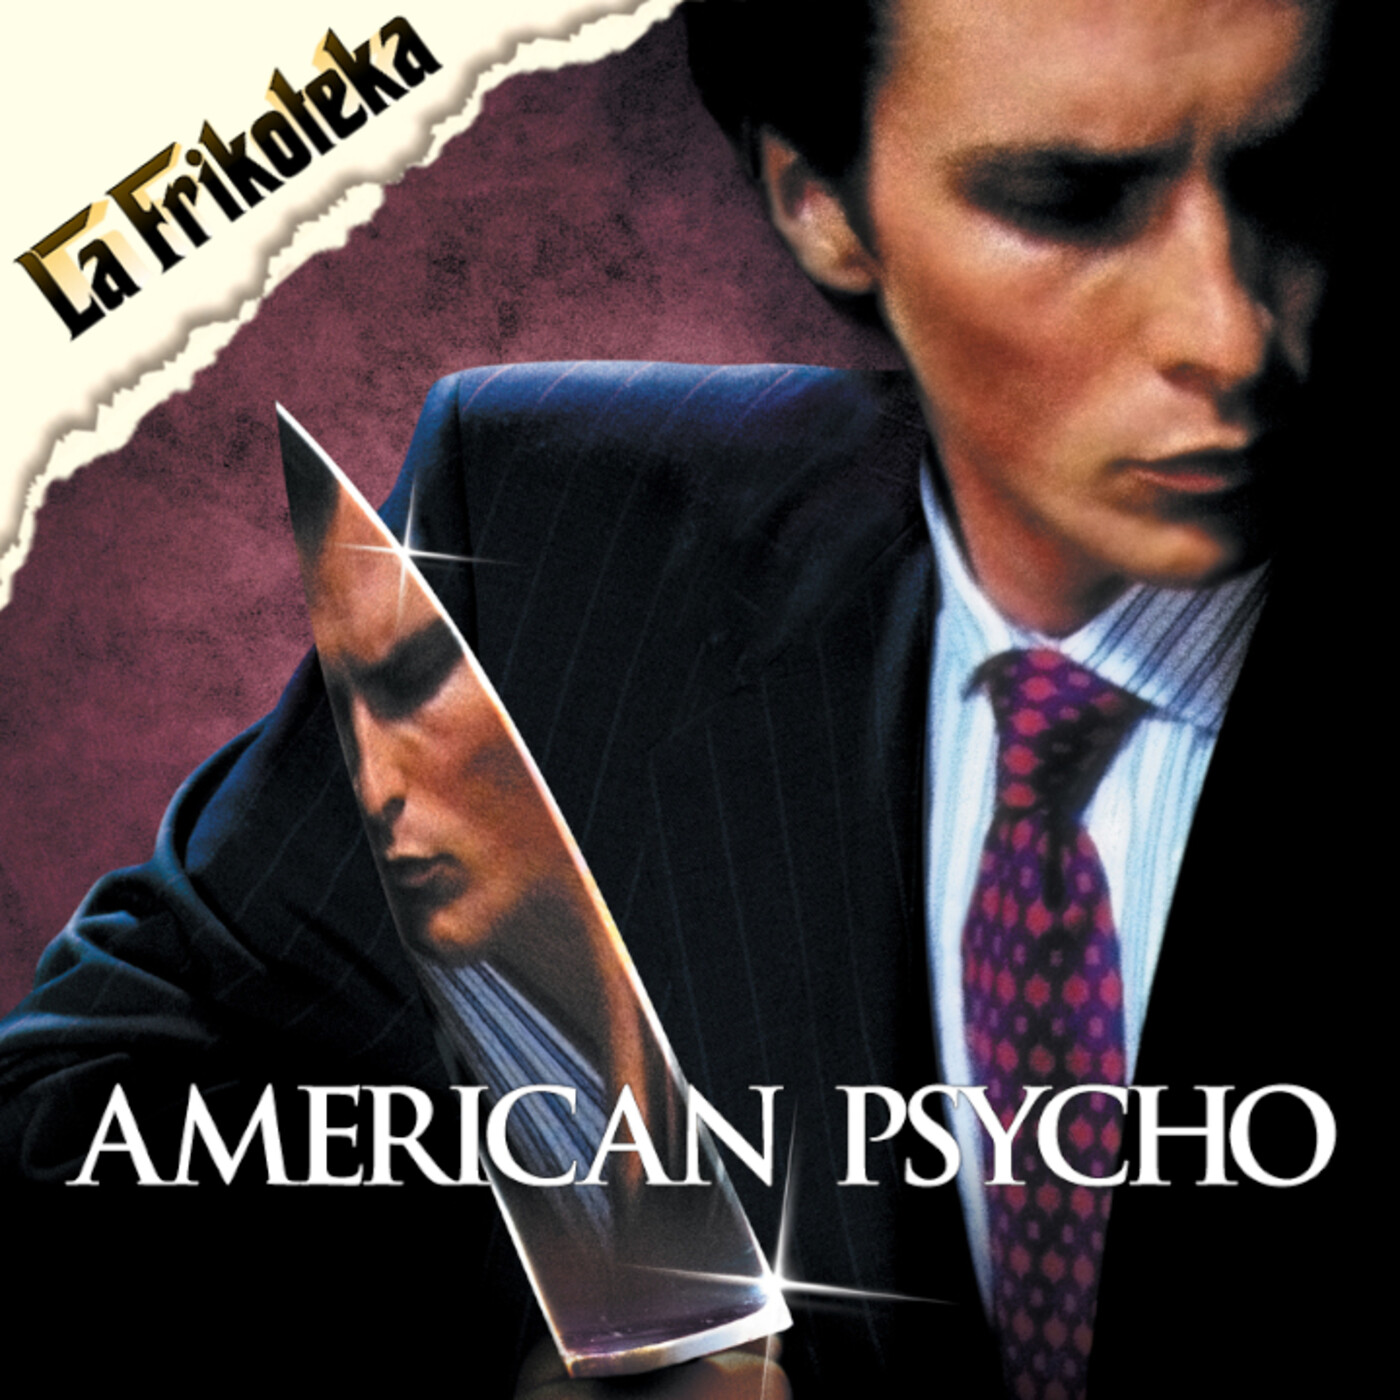 124 - American psycho (2000) - Episodio exclusivo para mecenas